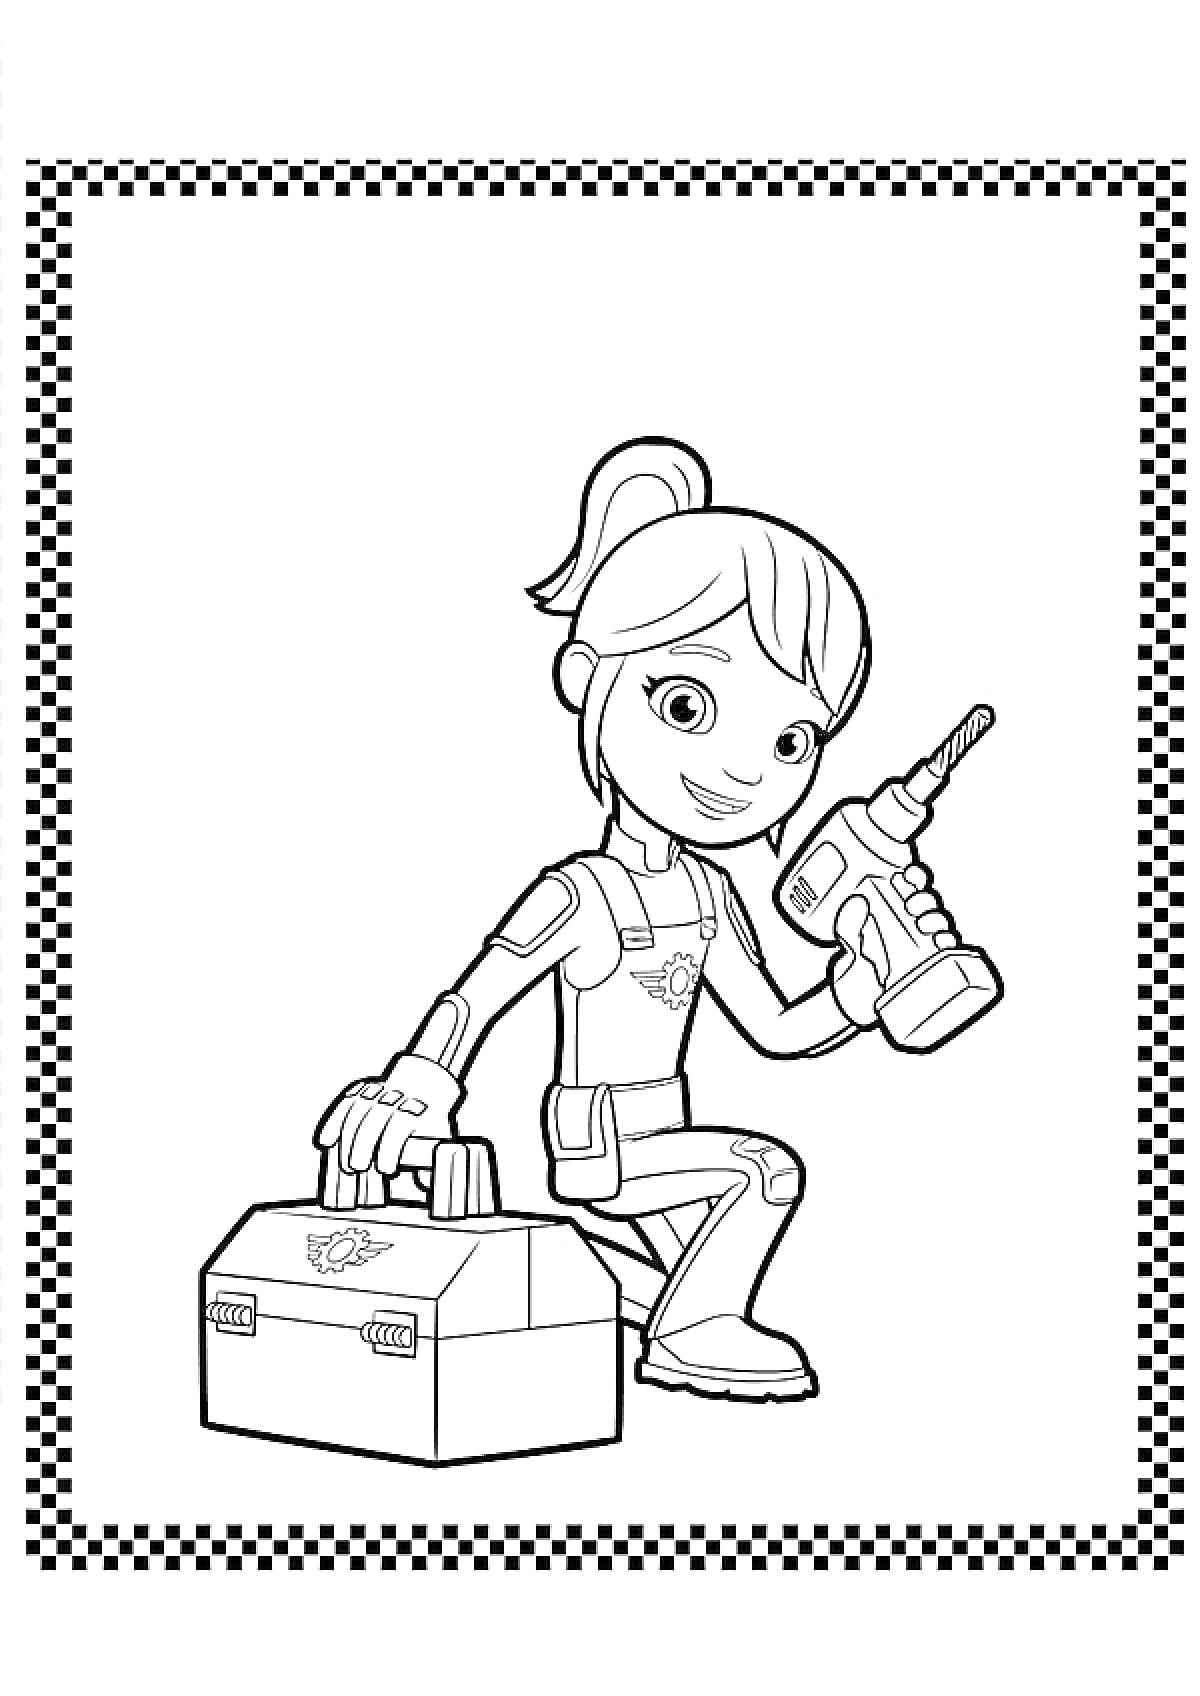 Девочка с высоким хвостиком держит дрель и ящик для инструментов